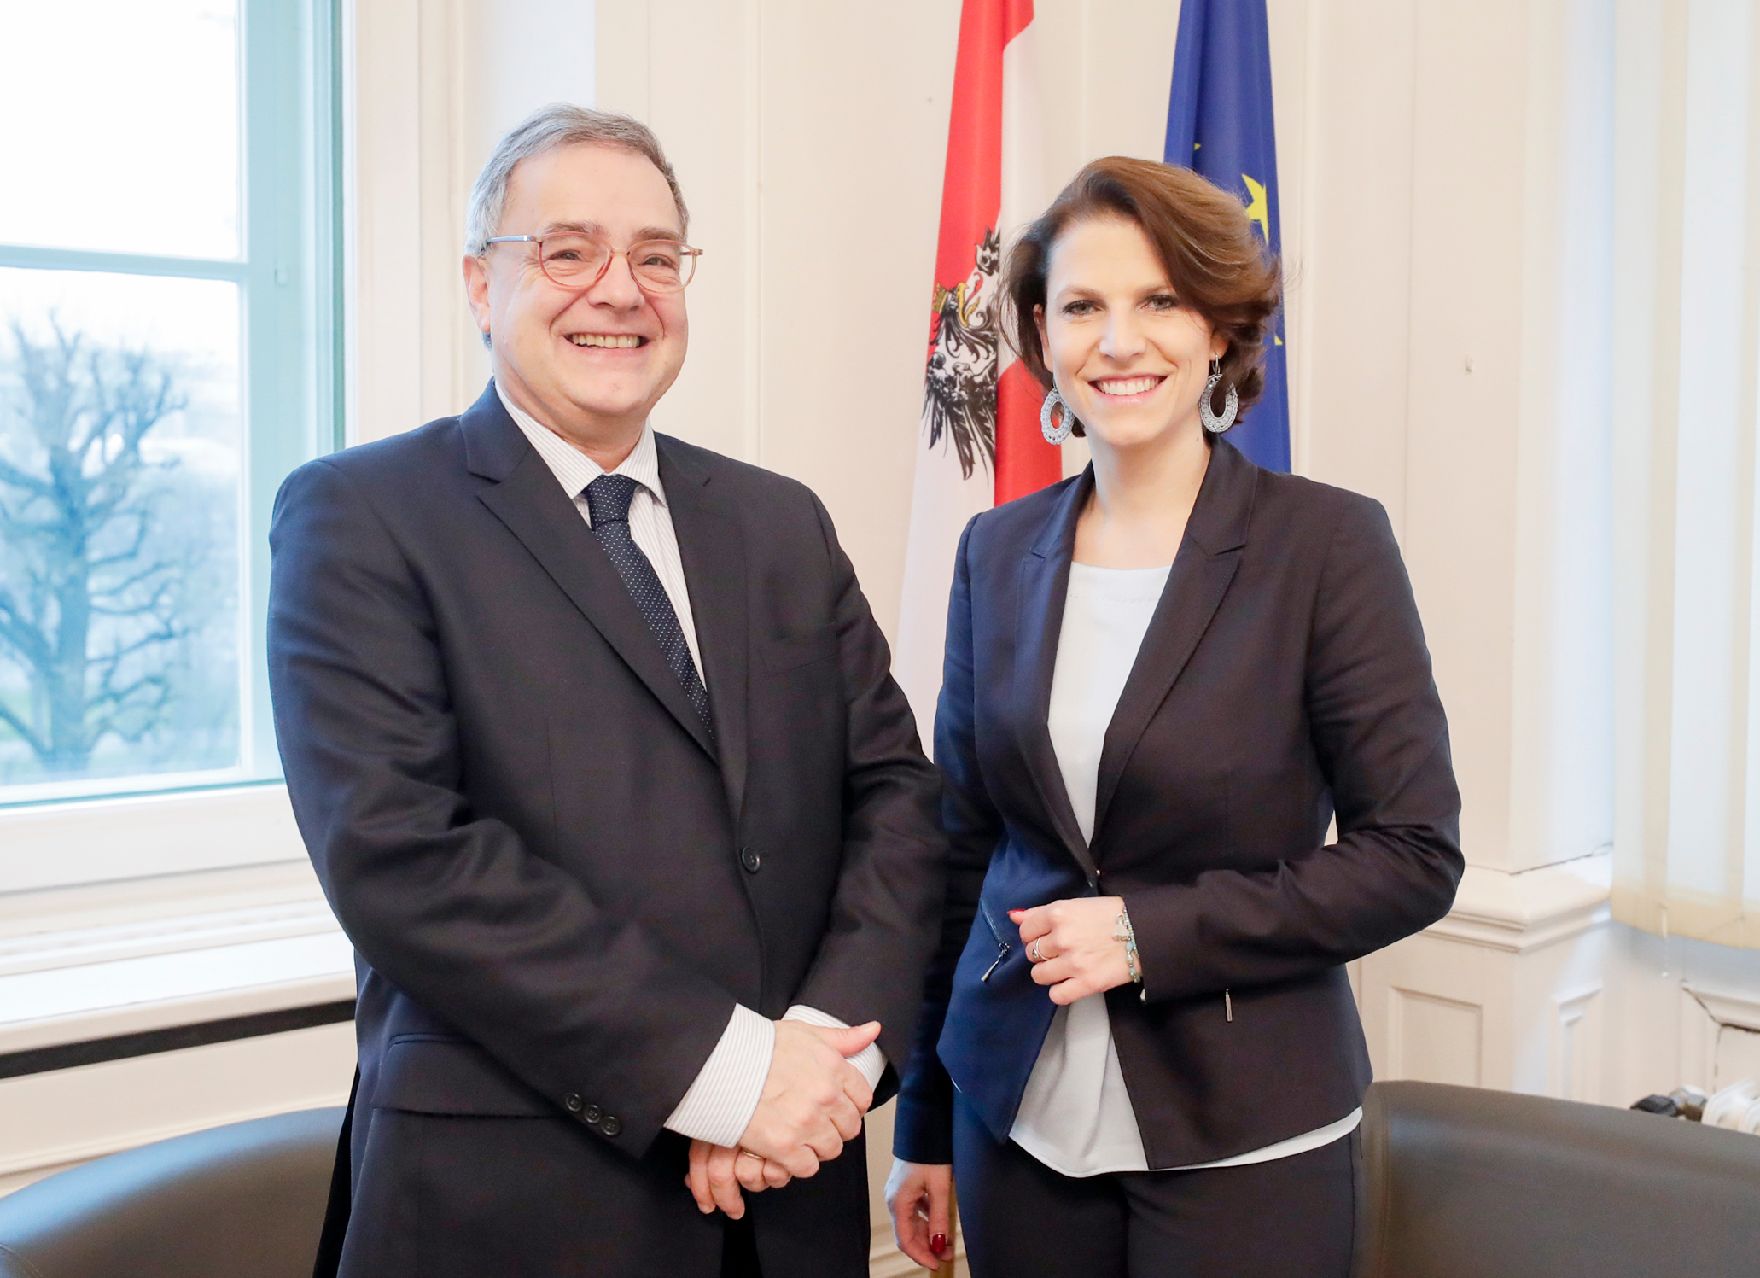 Am 14. Jänner 2020 empfing Bundesministerin Karoline Edtstadler (r.) den Französischen Botschafter François Saint-Paul (l.) zu einem Gespräch im Bundeskanzleramt.